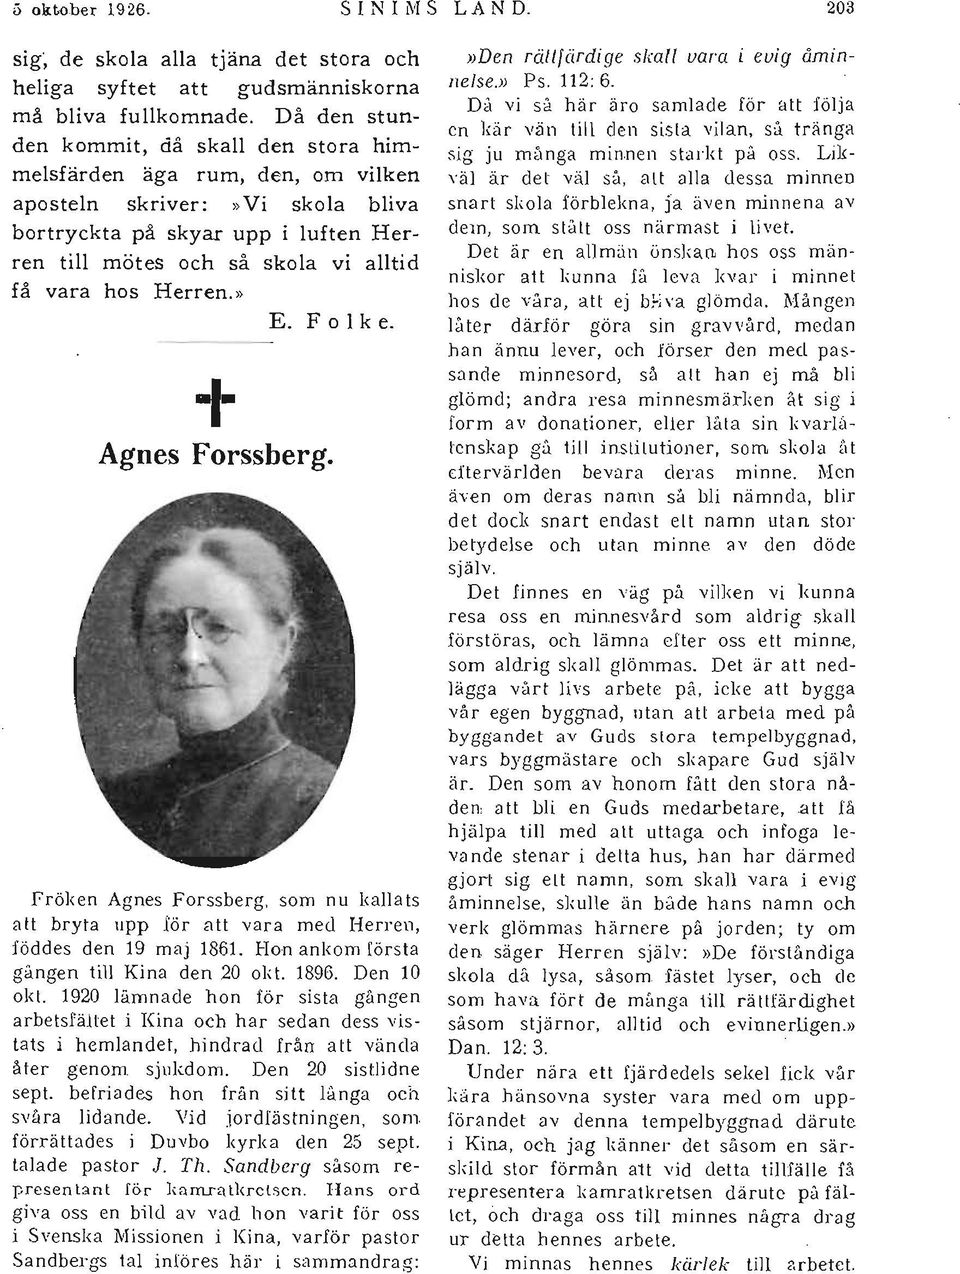 Herren.» E. F o l k e. + Agnes Forssberg. Fröken Agnes Forssberg, som nu I,allats a tt bryta upp för a tt vara med Herren, föddes den 19 maj 1861. Hon ankom första gången till Kina den 20 okt. 1896.